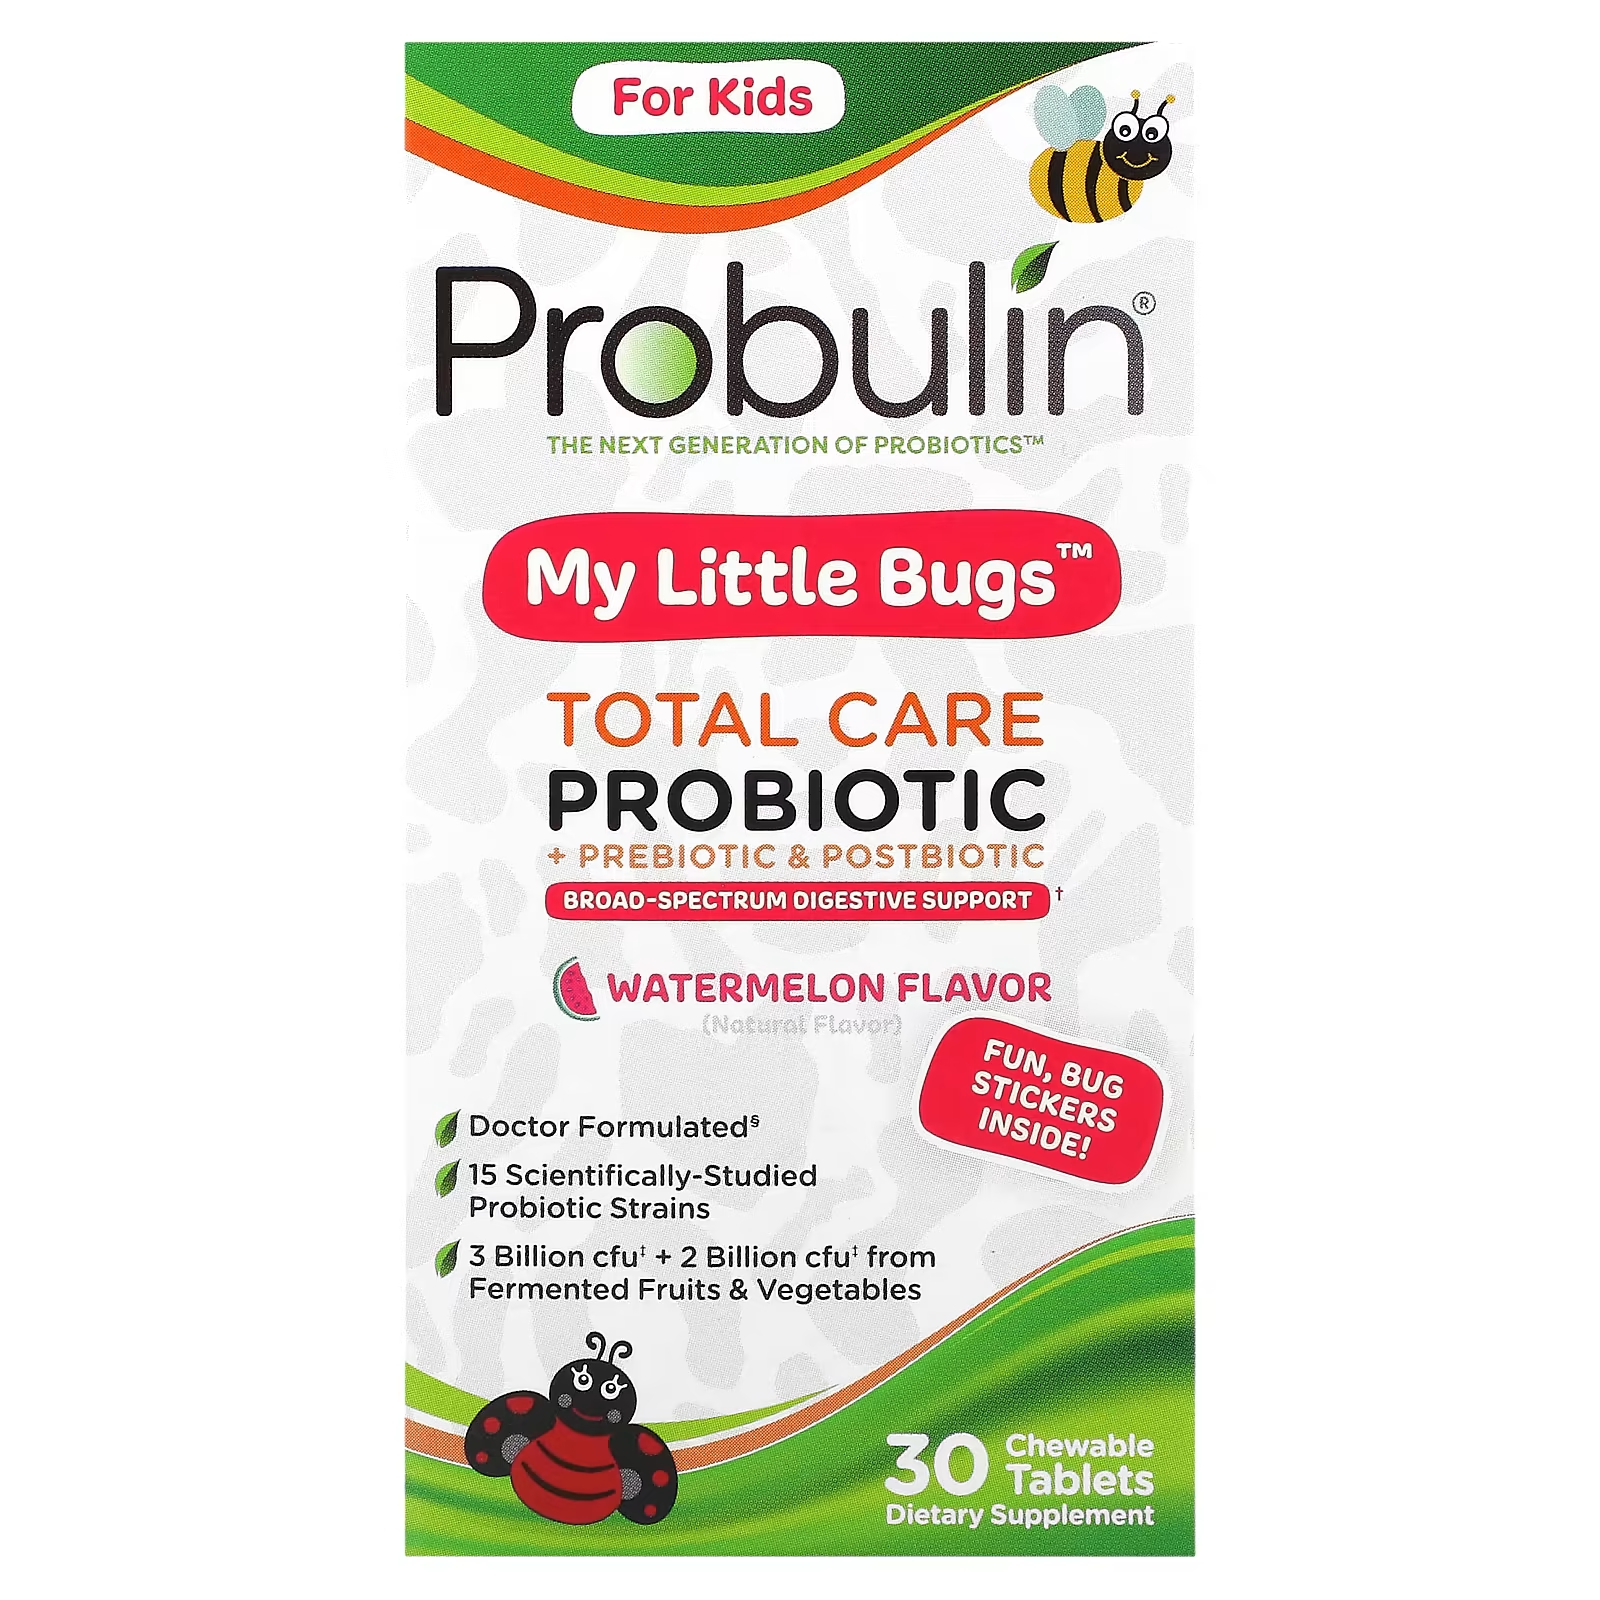 Пробулин для детей My Little Bugs Total Care Пробиотик + пребиотик и постбиотик с арбузом, 30 жевательных таблеток Probulin probulin для детей my little bugs пробиотик total care пребиотик и постбиотик арбуз 30 жевательных таблеток